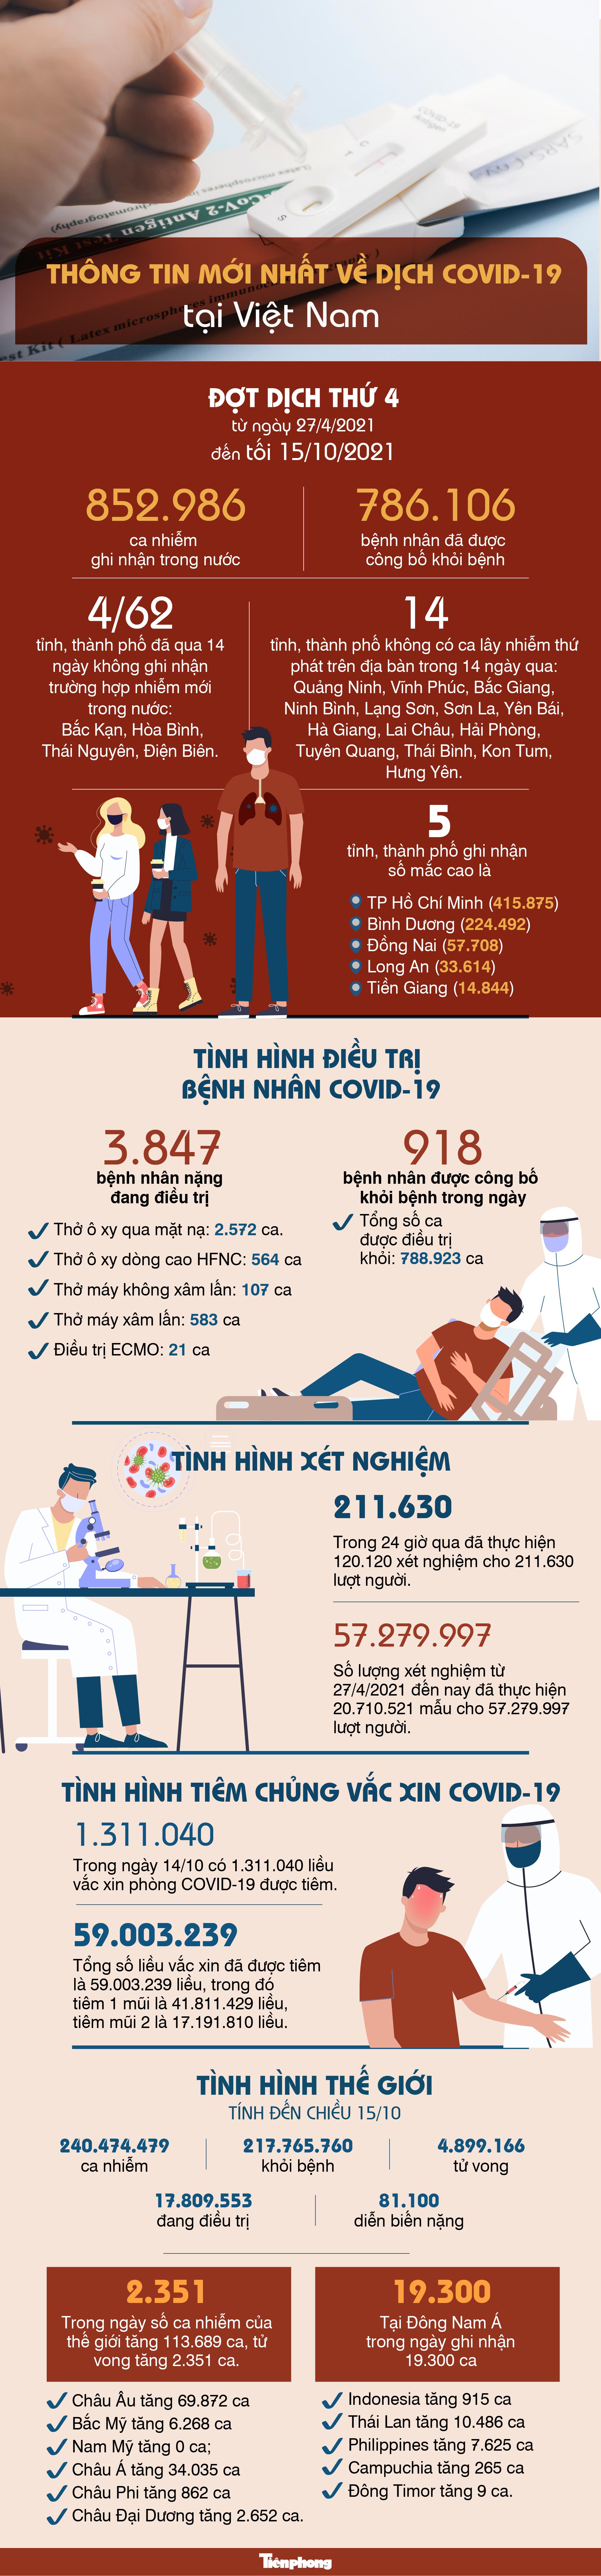 Thông tin mới nhất về diễn biến dịch COVID-19 tại Việt Nam - 1